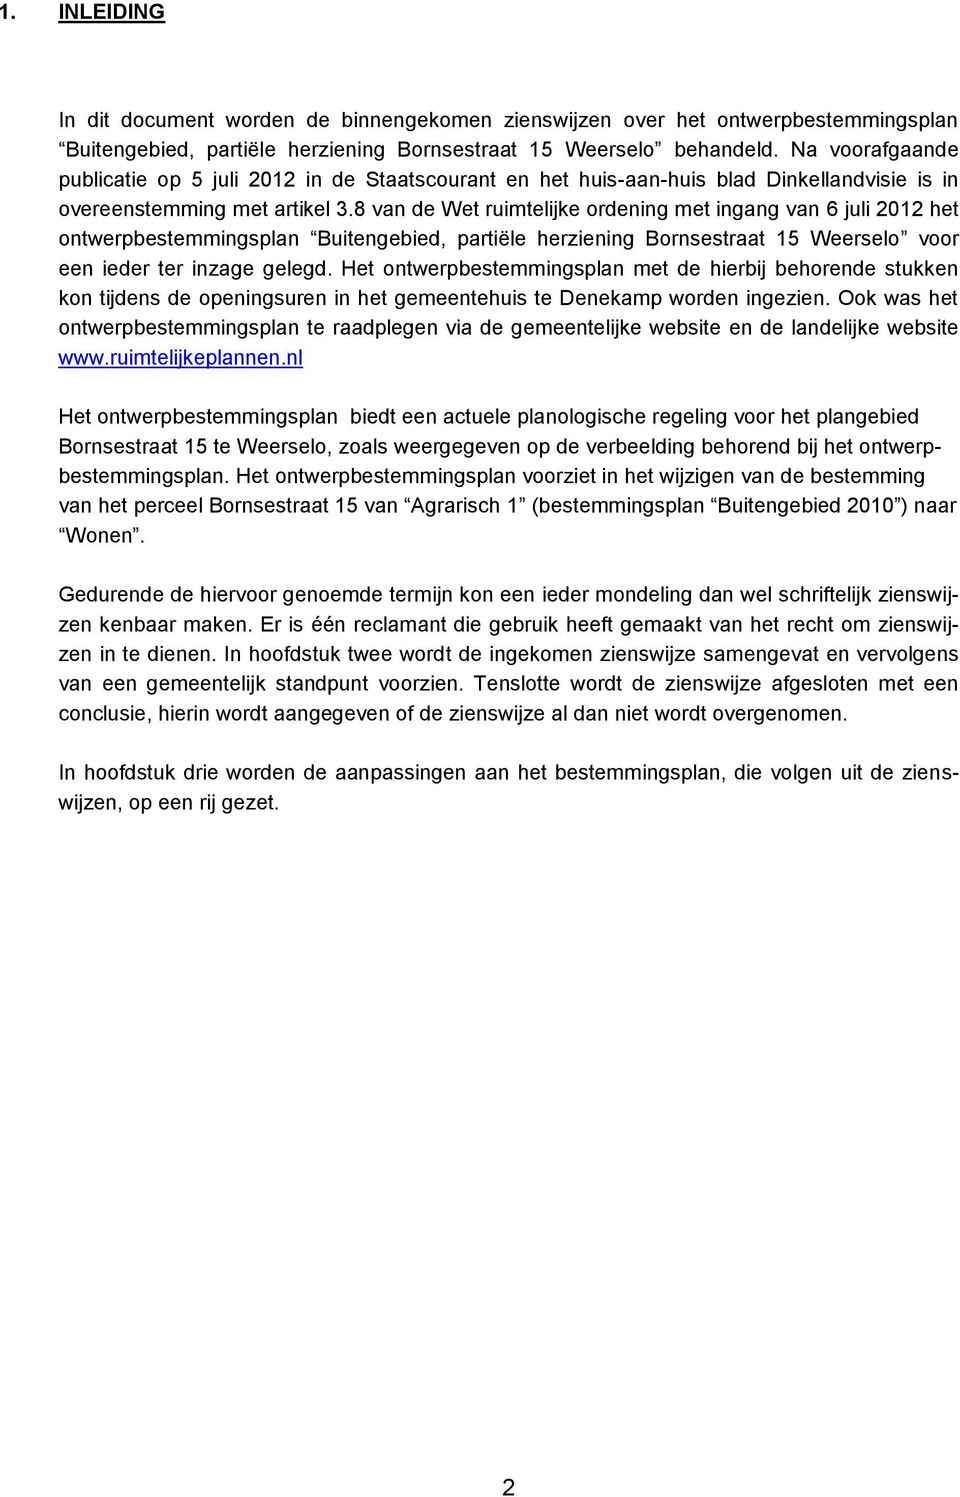 8 van de Wet ruimtelijke ordening met ingang van 6 juli 2012 het ontwerpbestemmingsplan Buitengebied, partiële herziening Bornsestraat 15 Weerselo voor een ieder ter inzage gelegd.